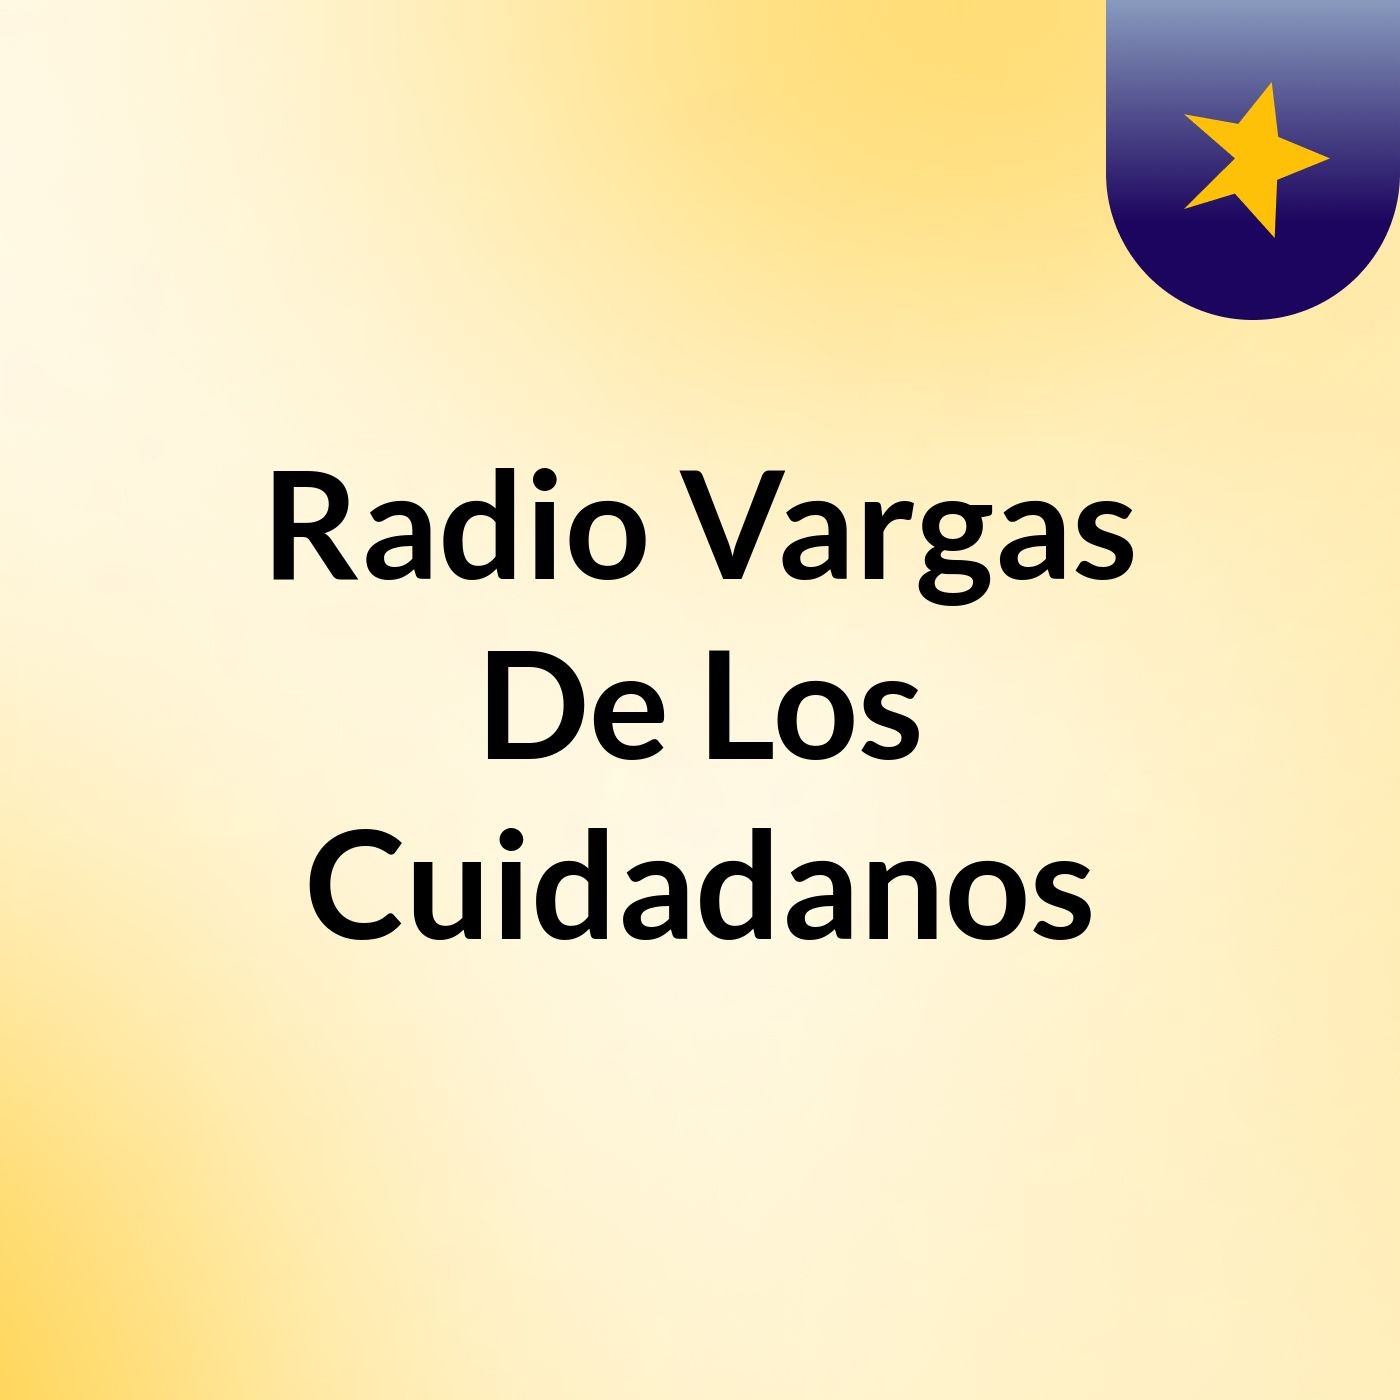 Radio Vargas De Los Cuidadanos